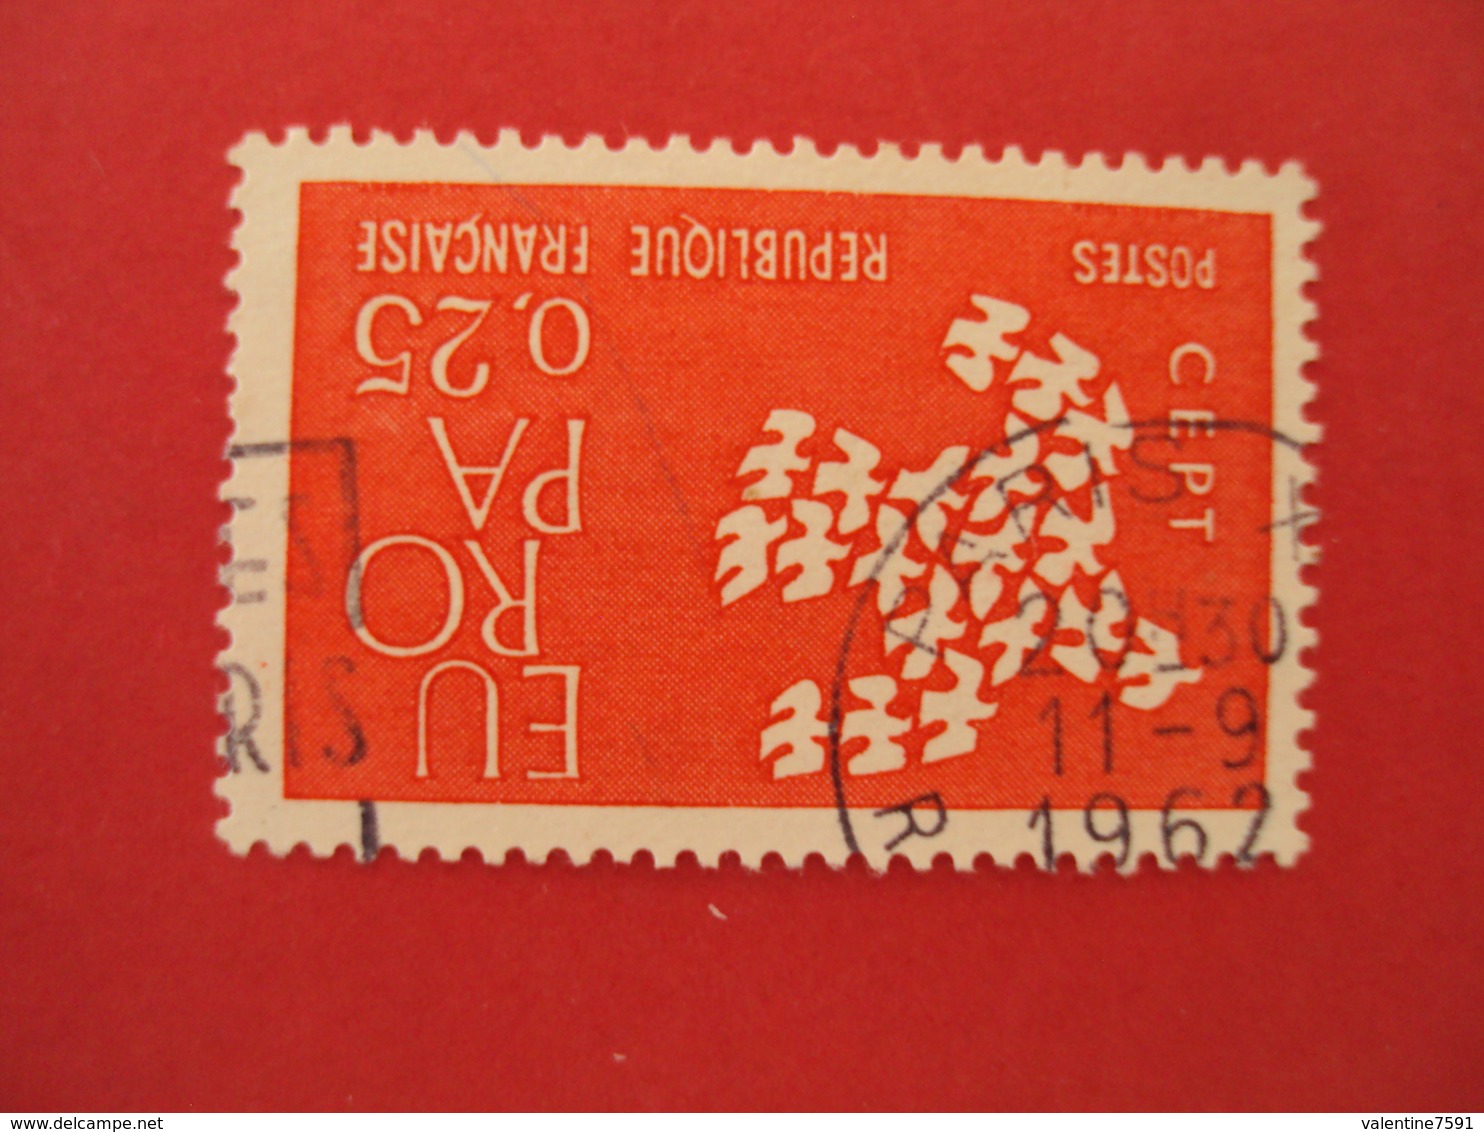 1960  Oblitéré   N° 1309  "  EUROPA 0.25 Rouge  "    Net   0.30     "paris"" - 1961 Marianne (Cocteau)